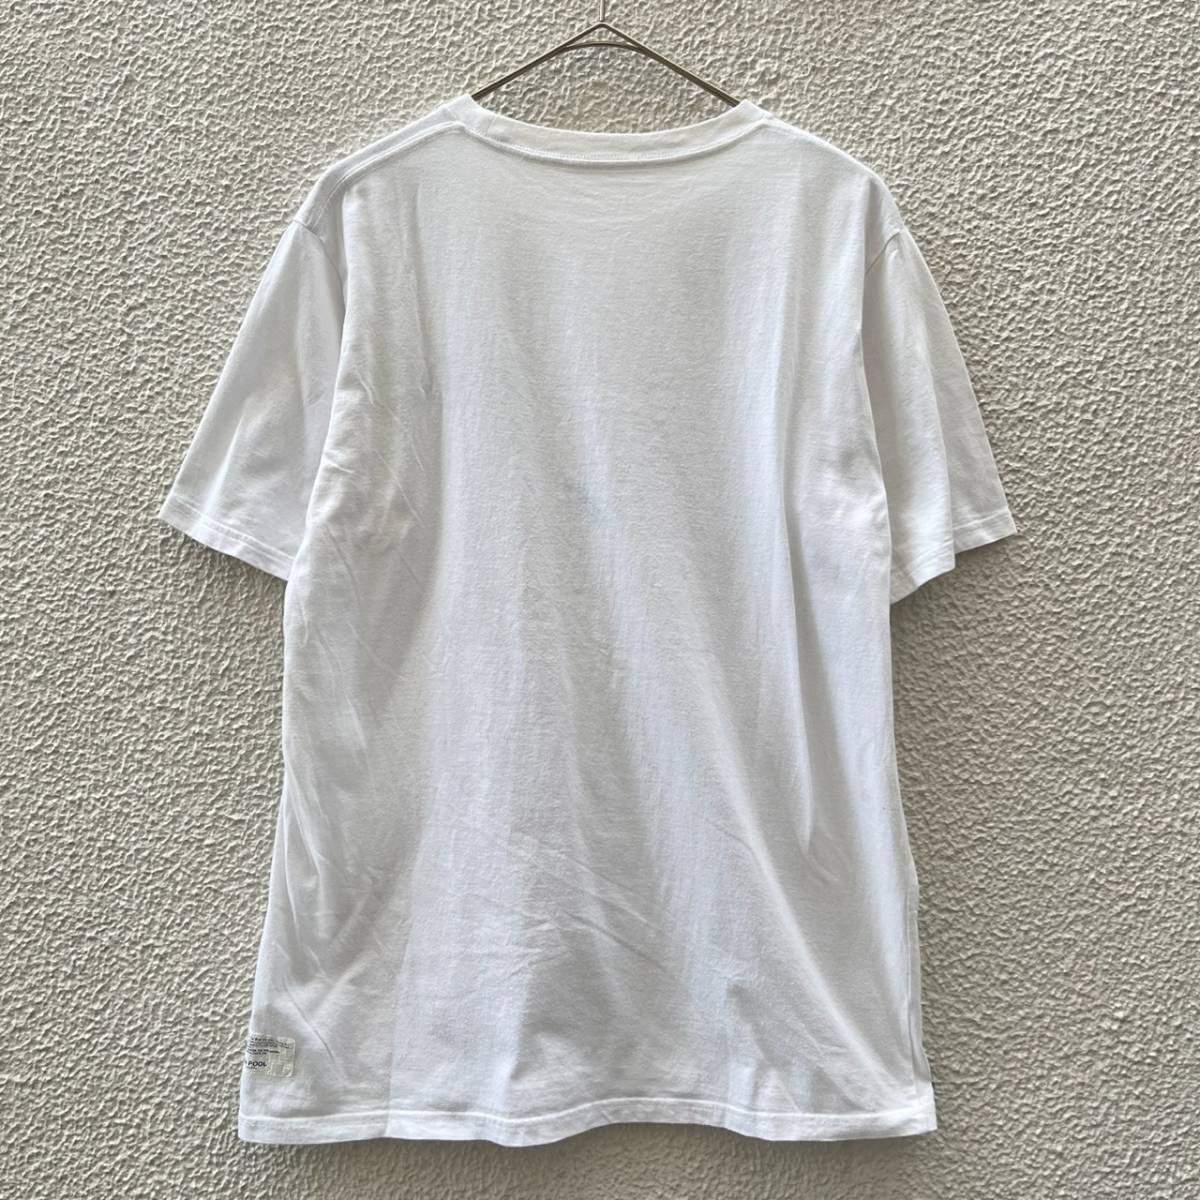 新品 FRAGMENT × THE CONVENI 青山限定 Tシャツ M 黒